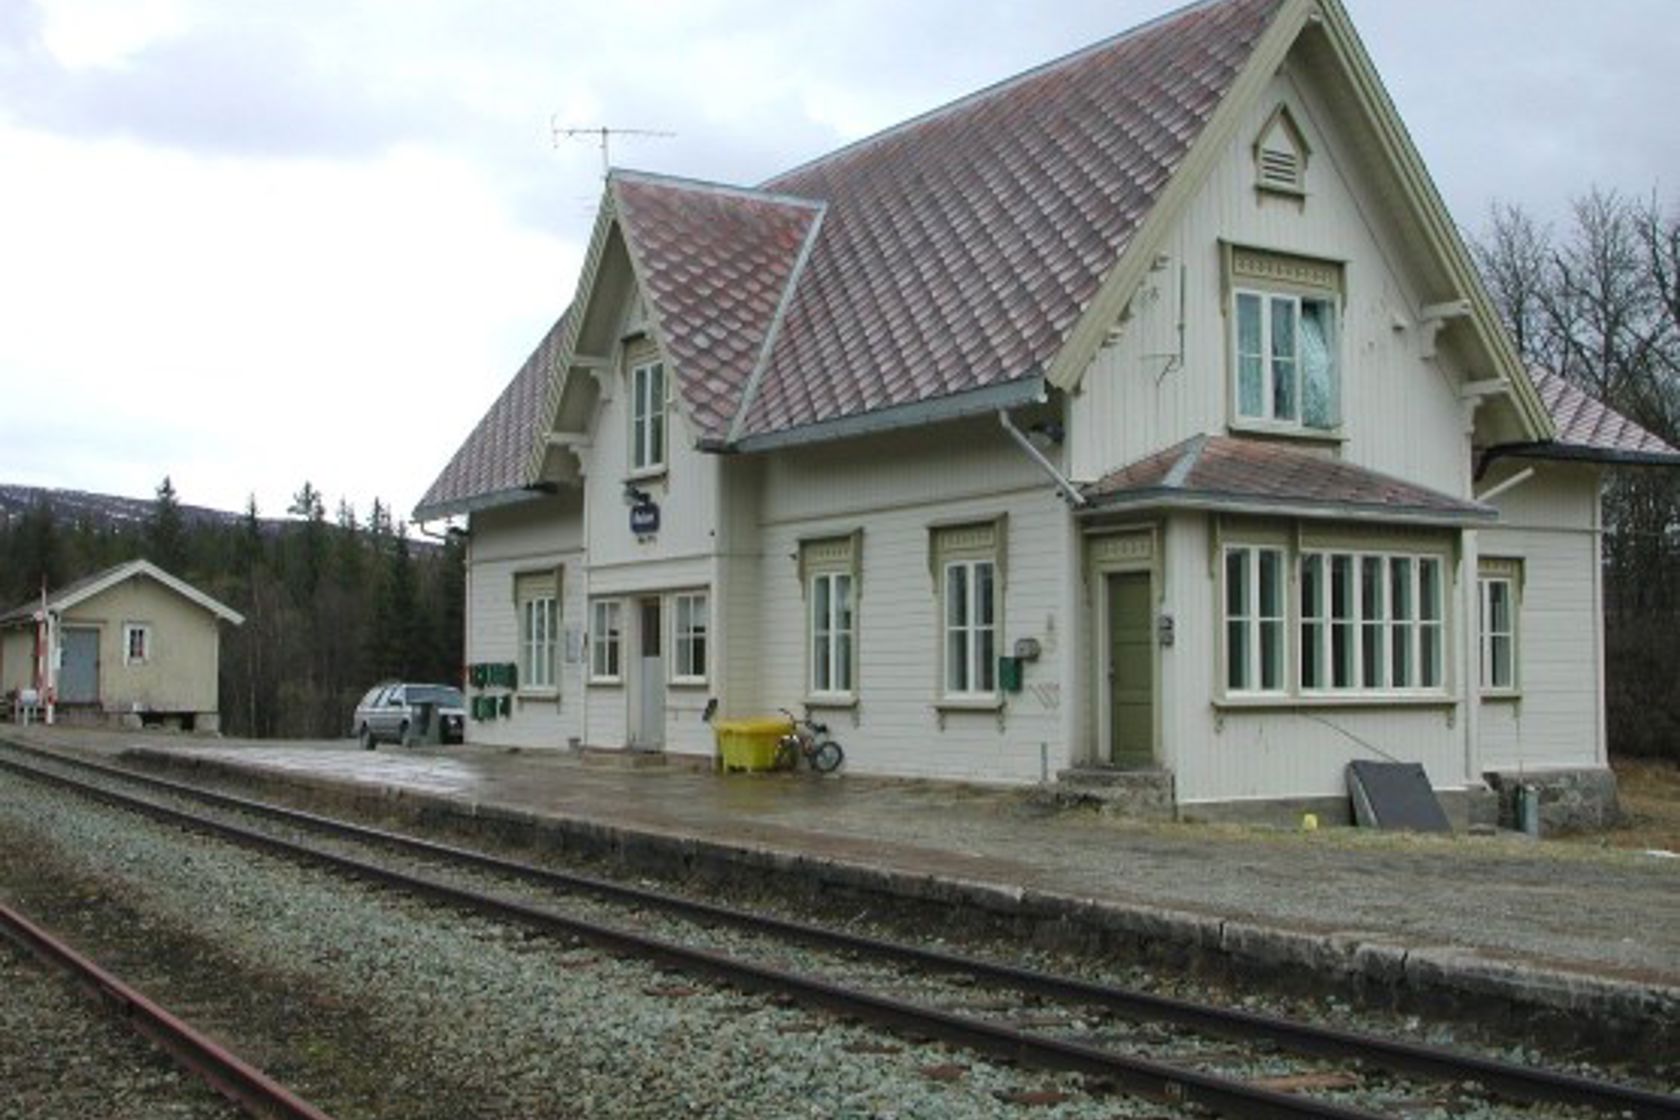 Exterior view of Reitan station